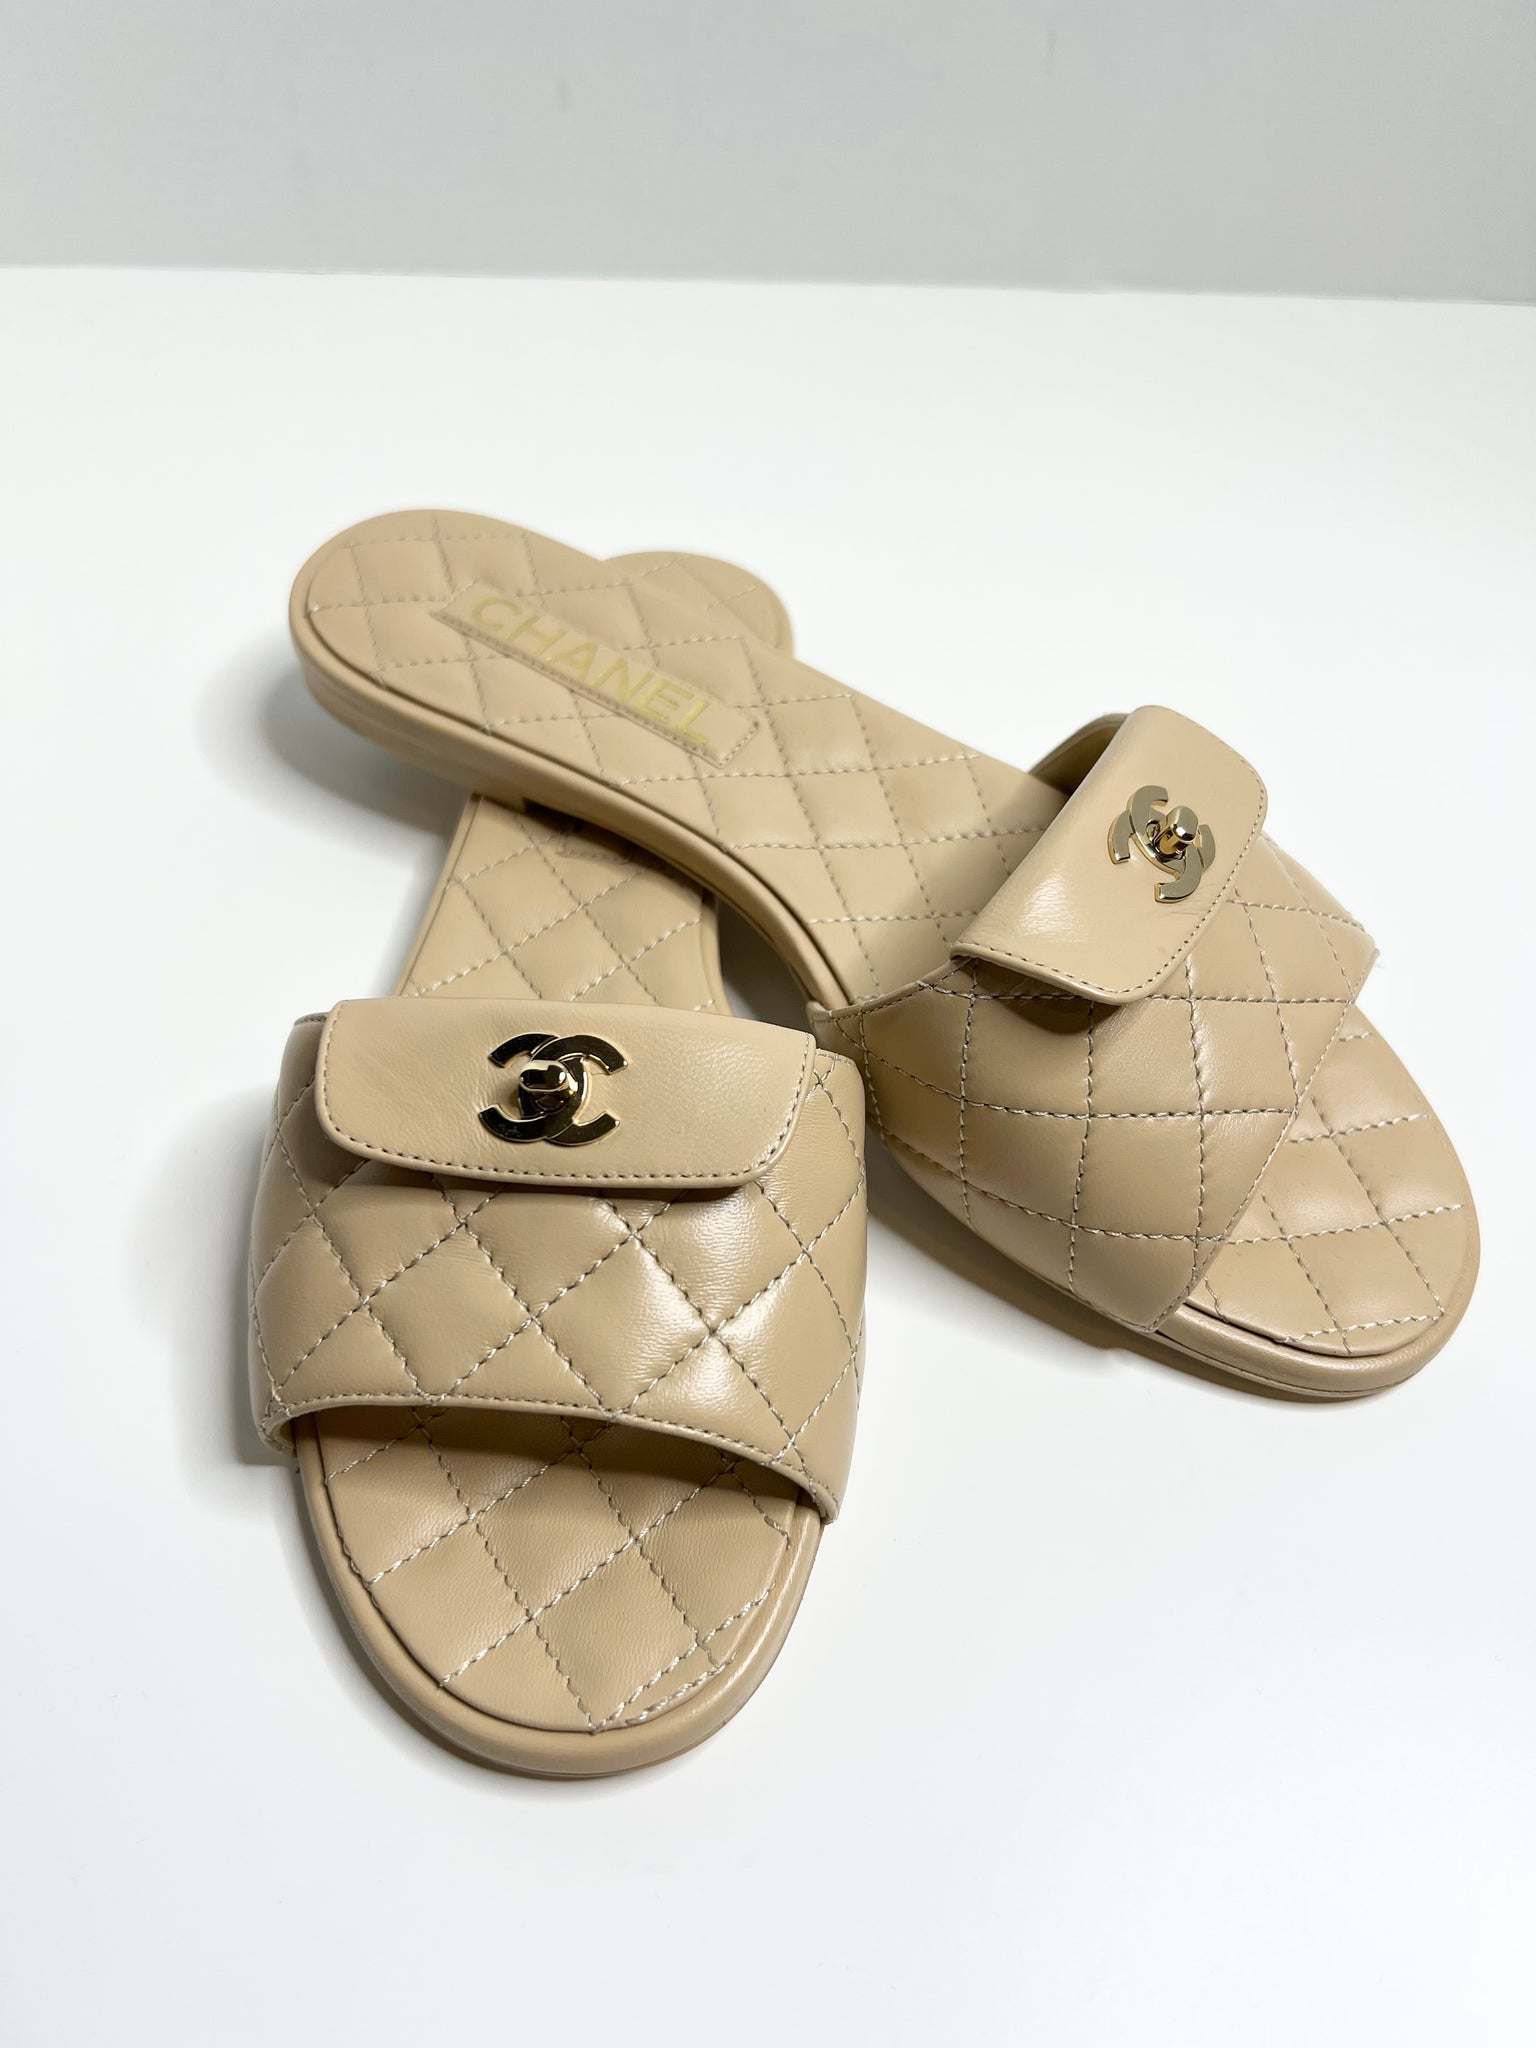 Chanel Studded Monogram Clog Sandals Size 39